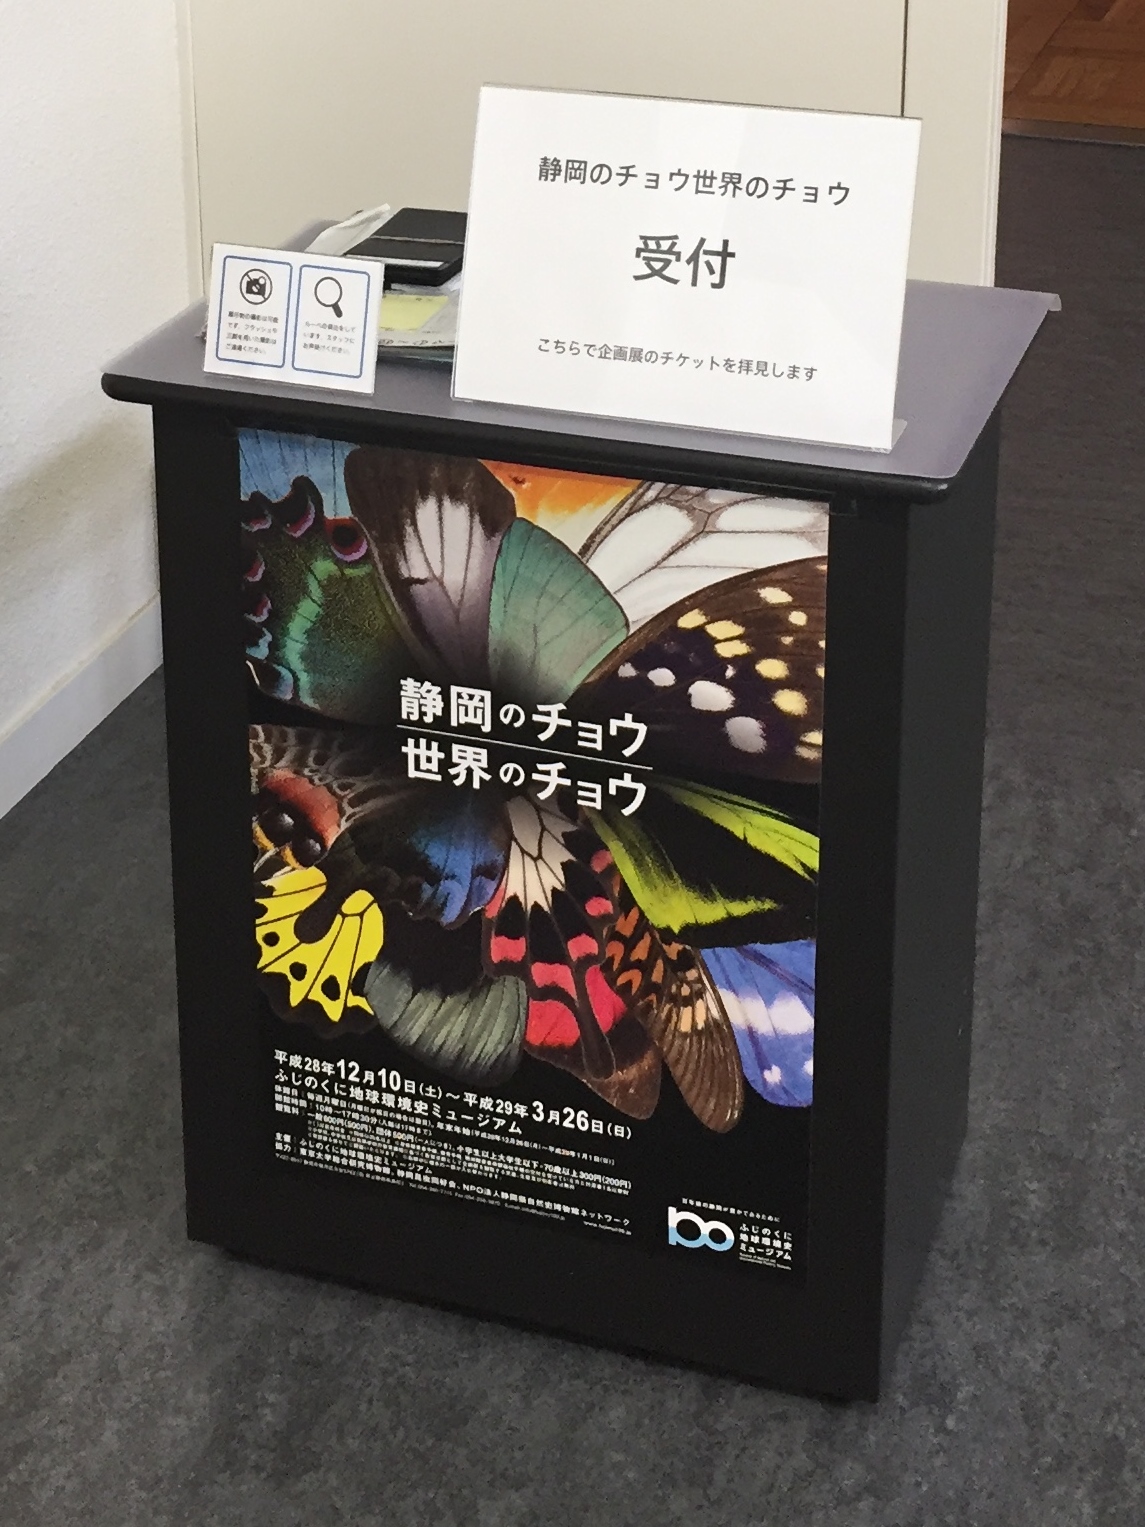 ふじのくに地球環境史ミュージアム 企画展「静岡のチョウ 世界のチョウ」の写真